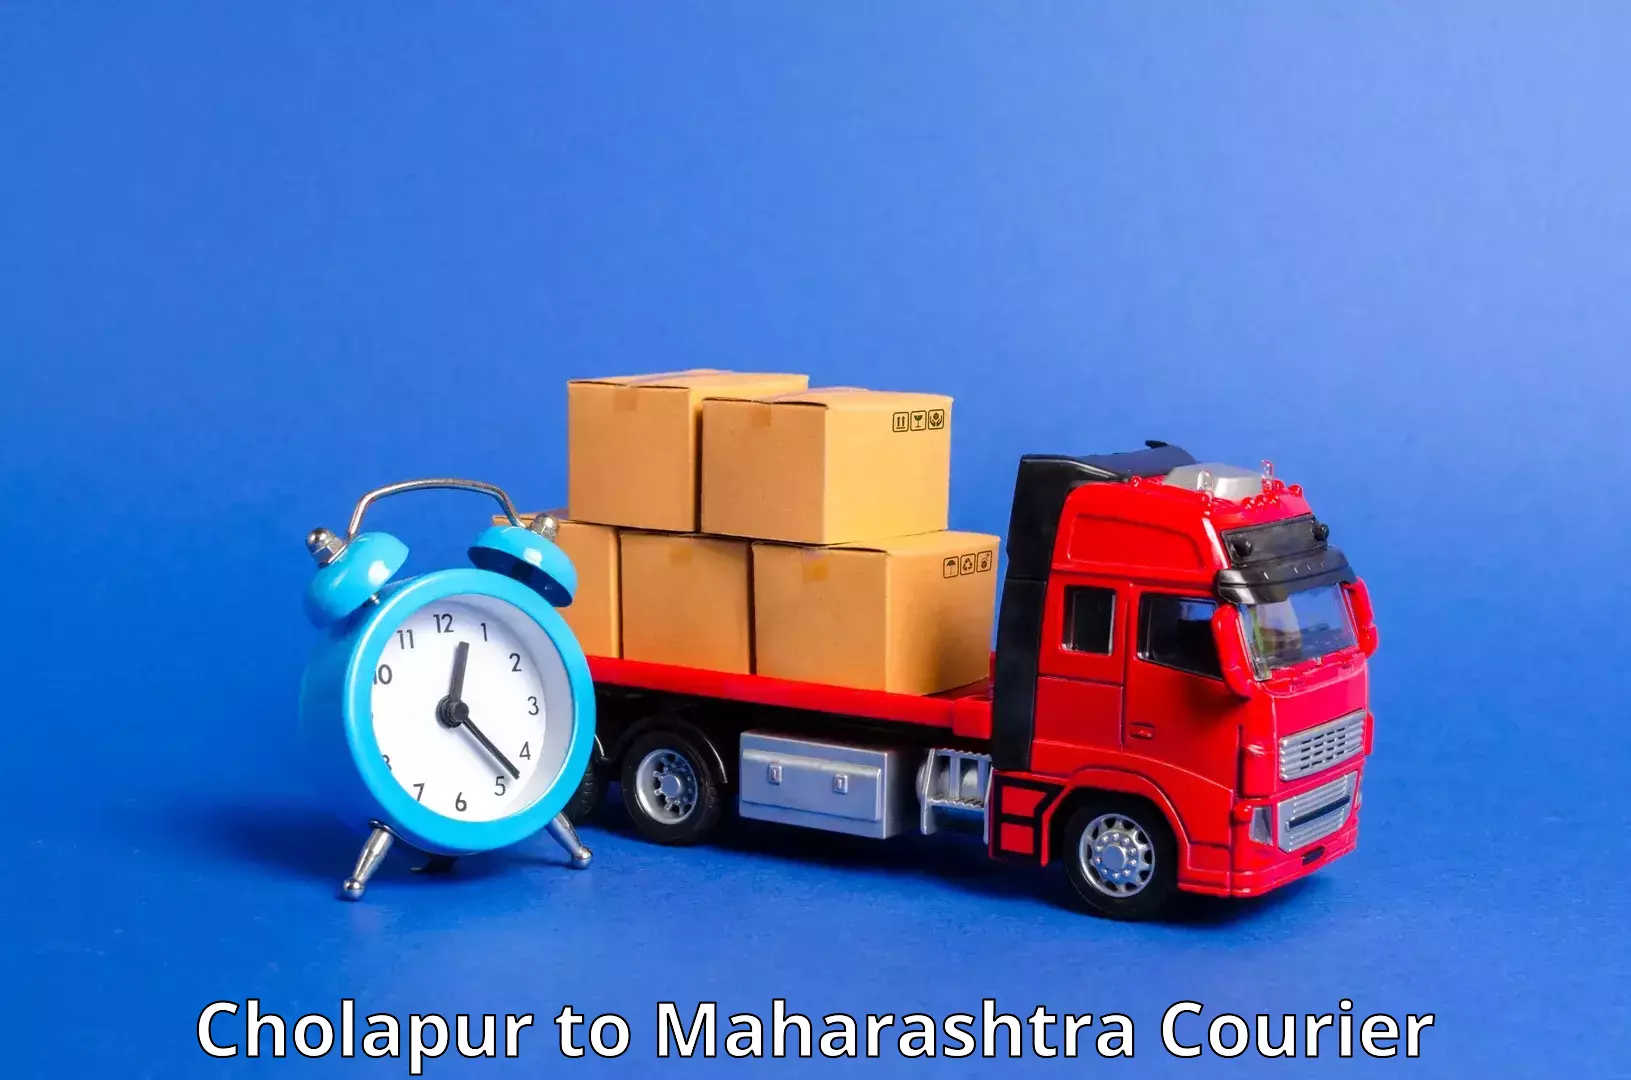 24/7 courier service Cholapur to Ulhasnagar